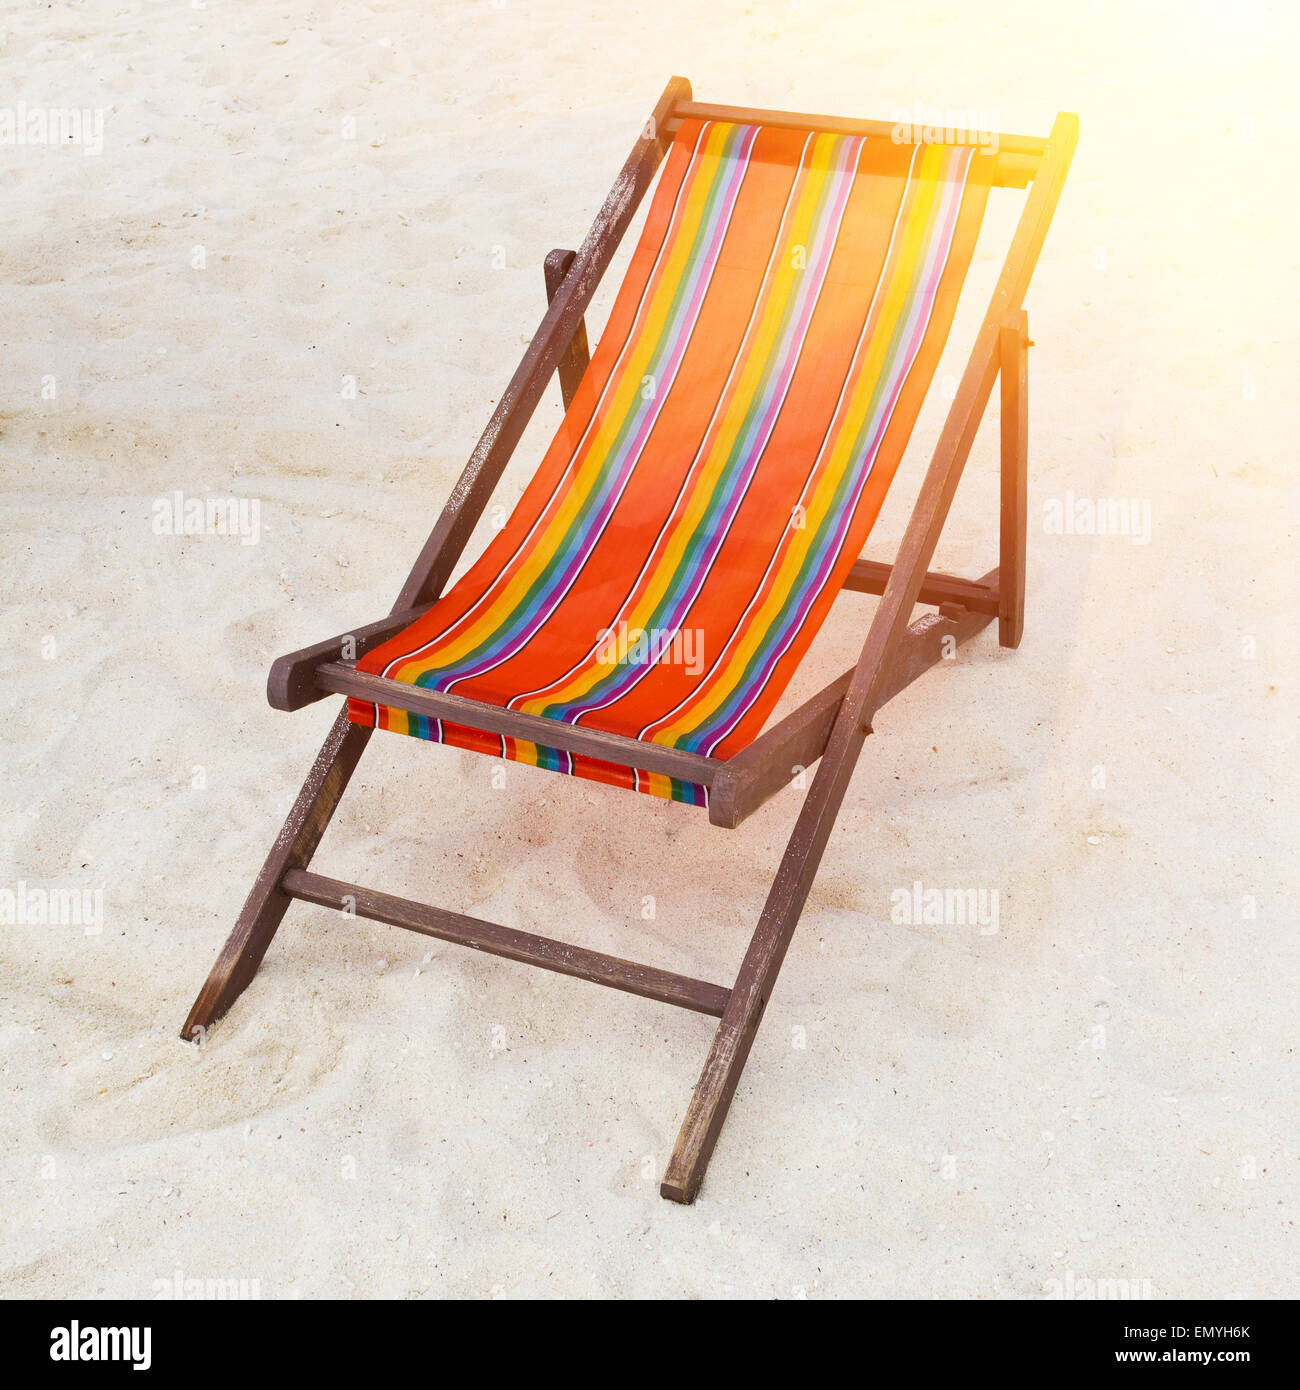 Beach chair on the beach Stock Photo